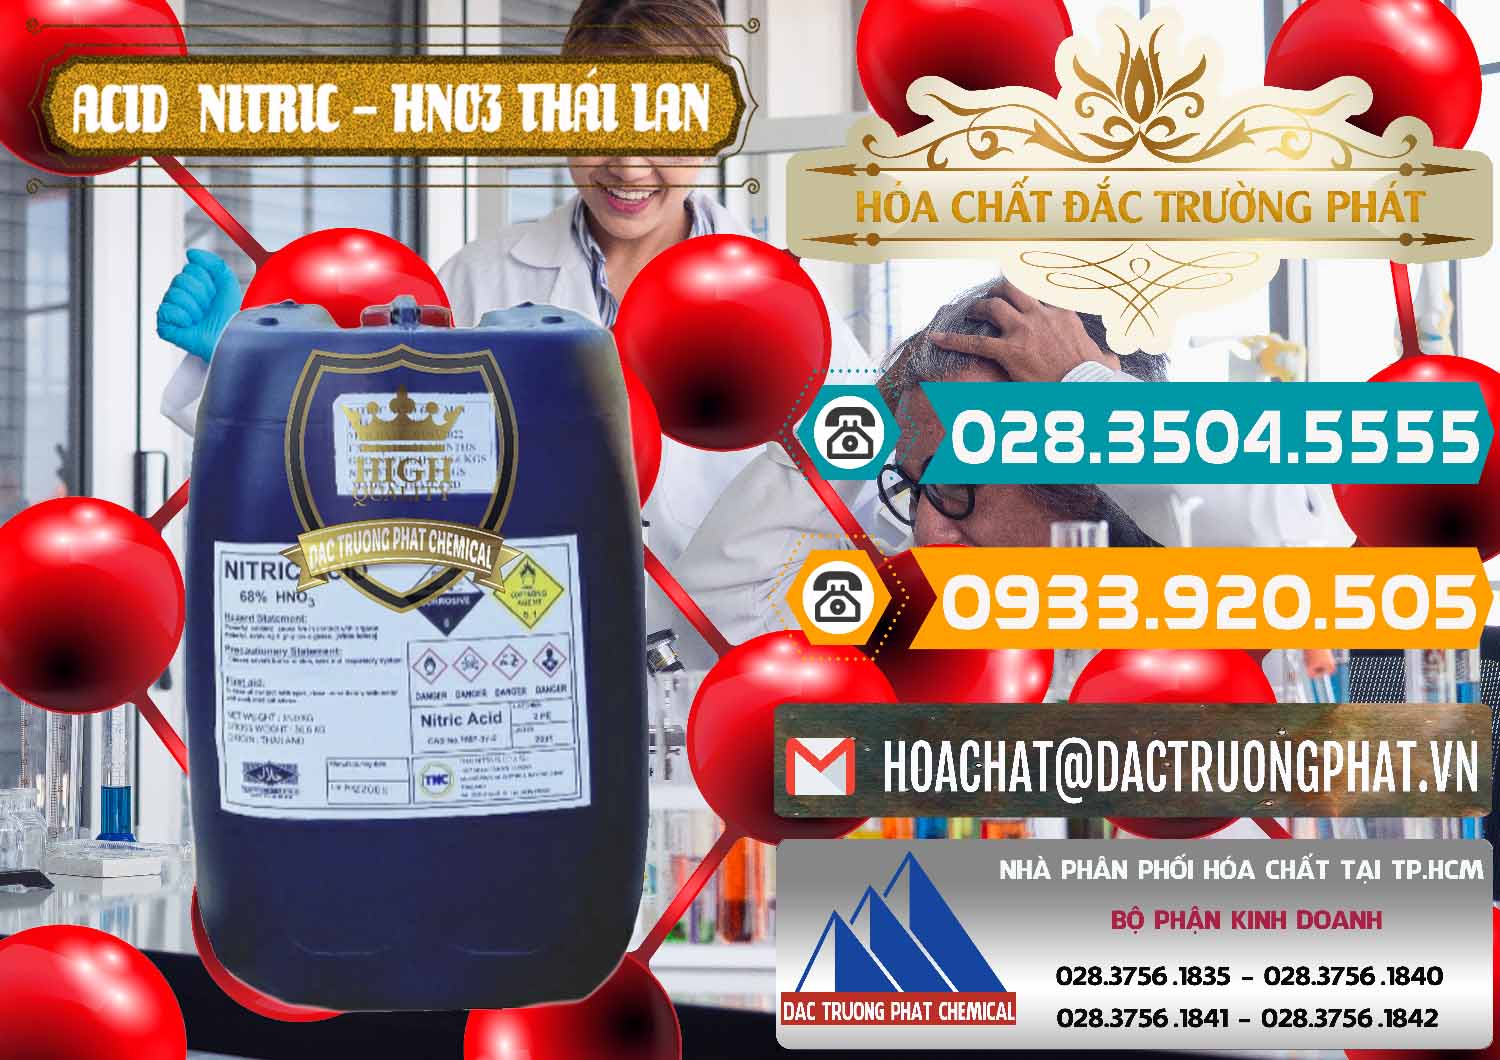 Cty chuyên kinh doanh & bán Acid Nitric – Axit Nitric HNO3 Thái Lan Thailand - 0344 - Công ty cung cấp & kinh doanh hóa chất tại TP.HCM - congtyhoachat.vn